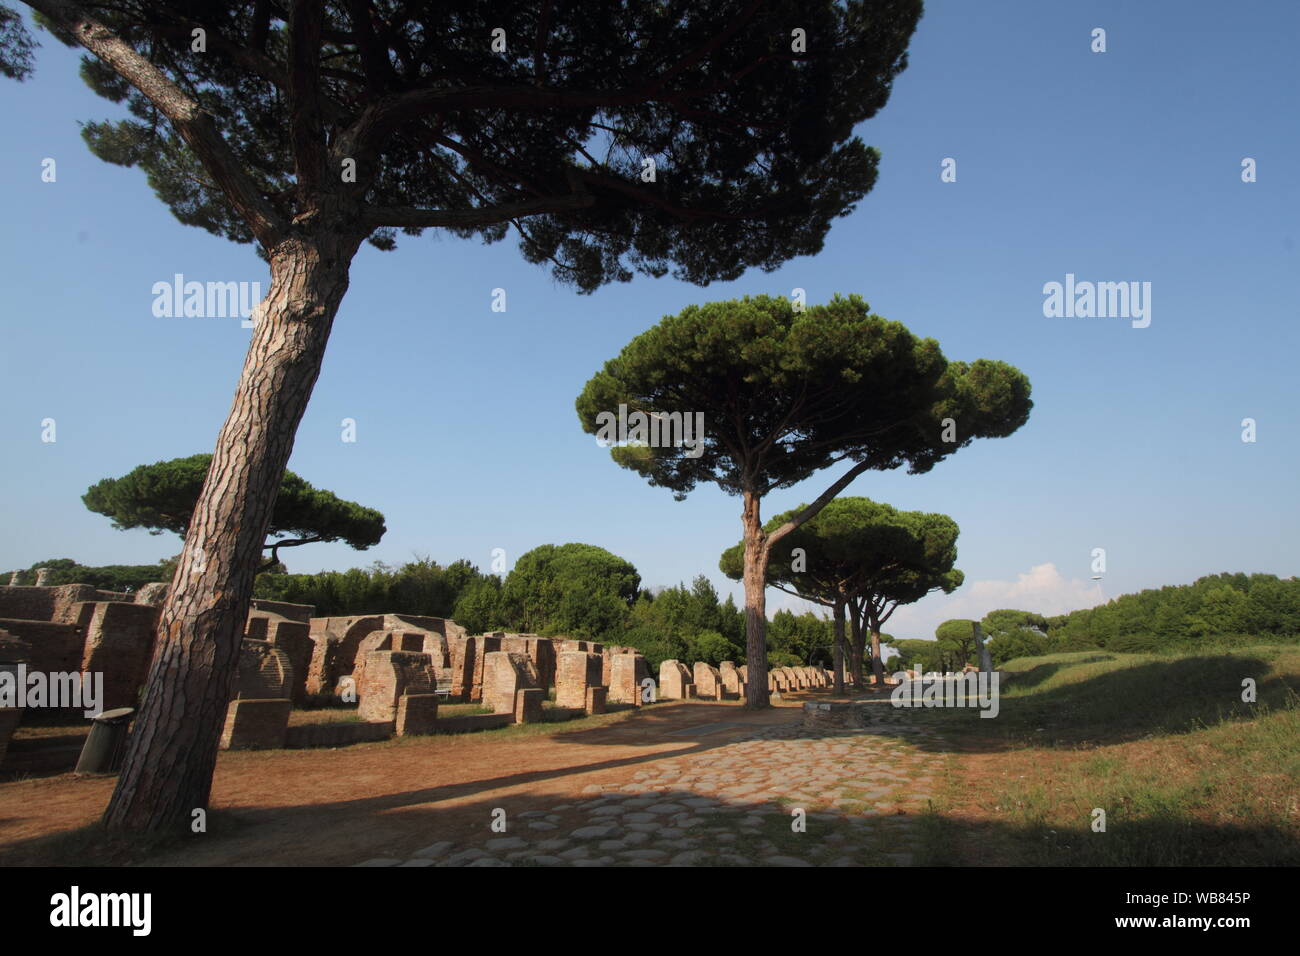 Roma, Italia - 25 agosto 2019: Il sito archeologico di Ostia Antica Foto Stock